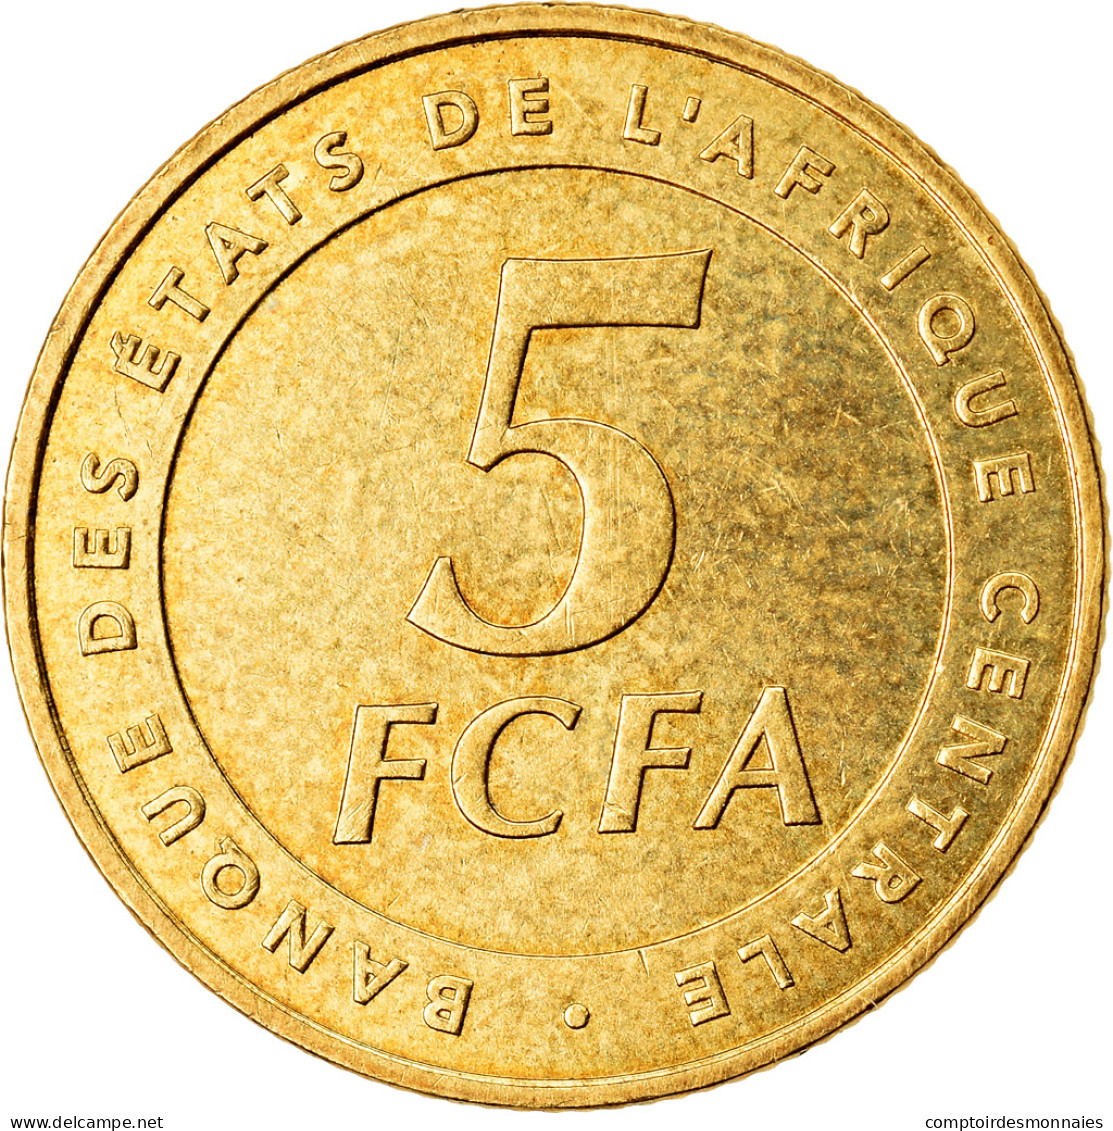 Monnaie, États De L'Afrique Centrale, 5 Francs, 2006, Paris, TTB, Laiton, KM:18 - Repubblica Centroafricana